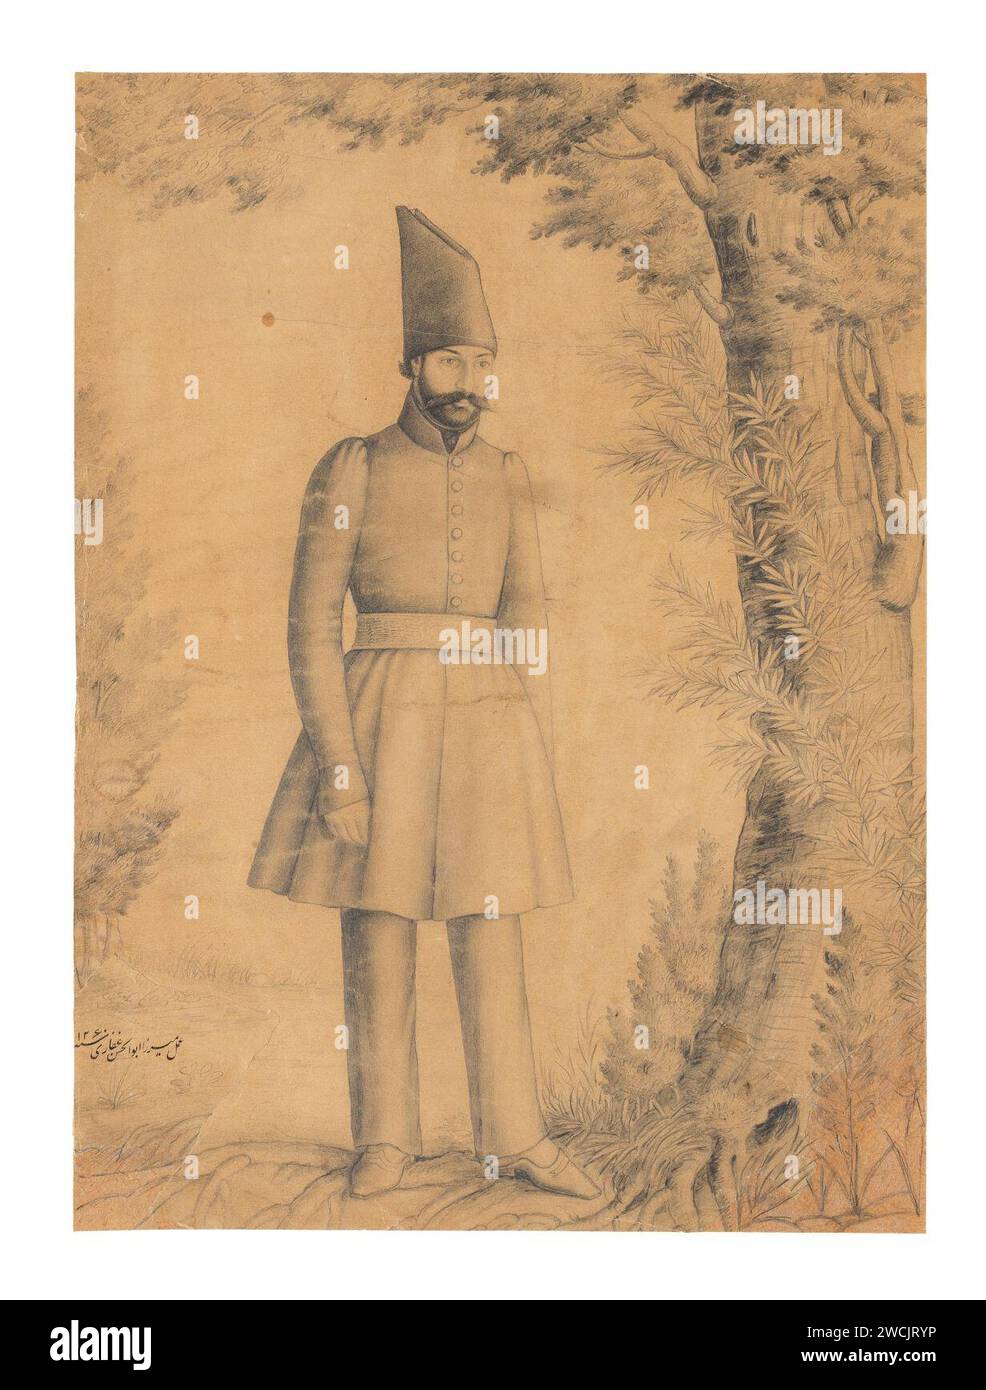 Un disegno di un principe Qajar, in piedi in una foresta, attribuito a Mirza Abu'l Hasan Ghaffari, sani al-Mulk, Persia, datato 1844-45. Foto Stock